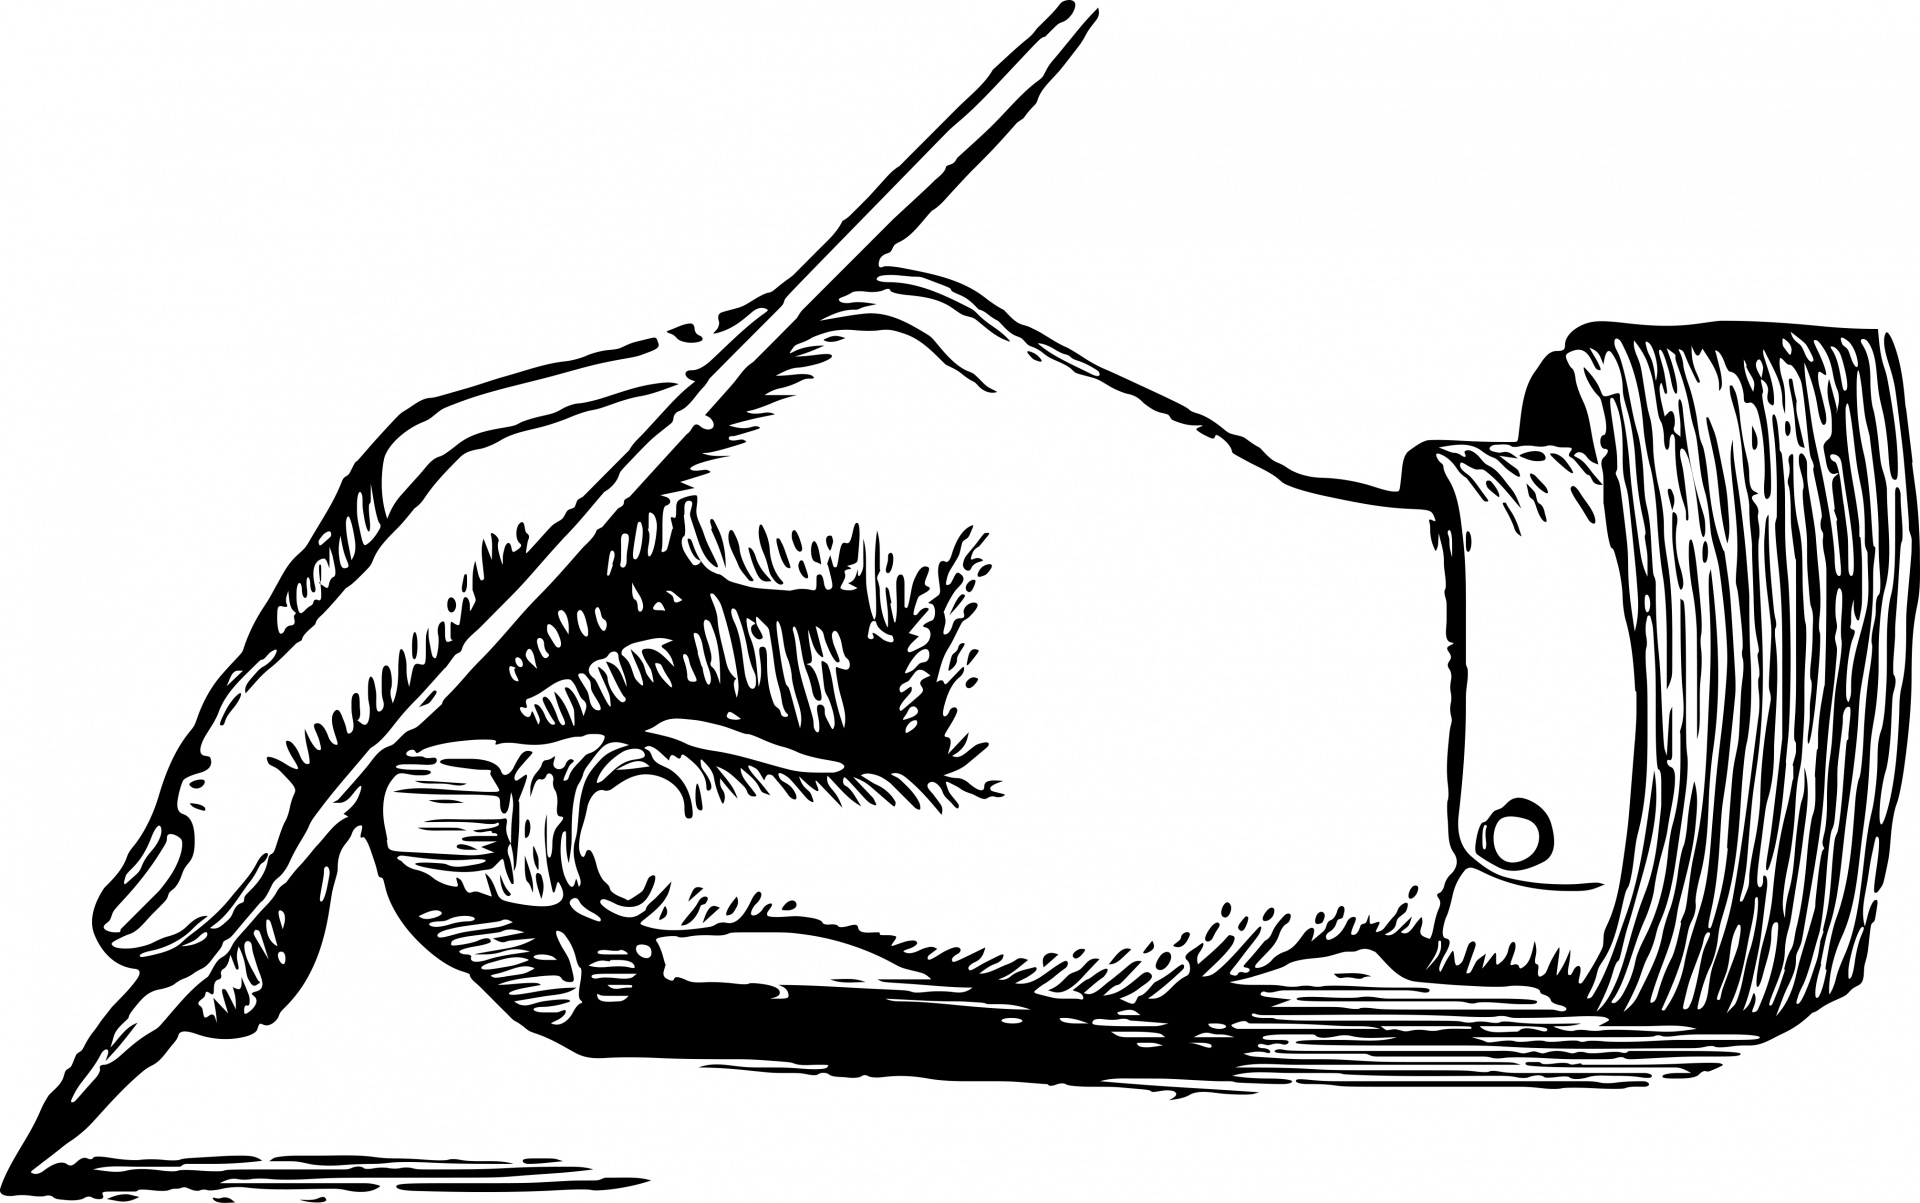 Написать drawing. Рука с ручкой. Что нарисовать на руке ручкой. Рука пишет. Рука с ручкой чб.